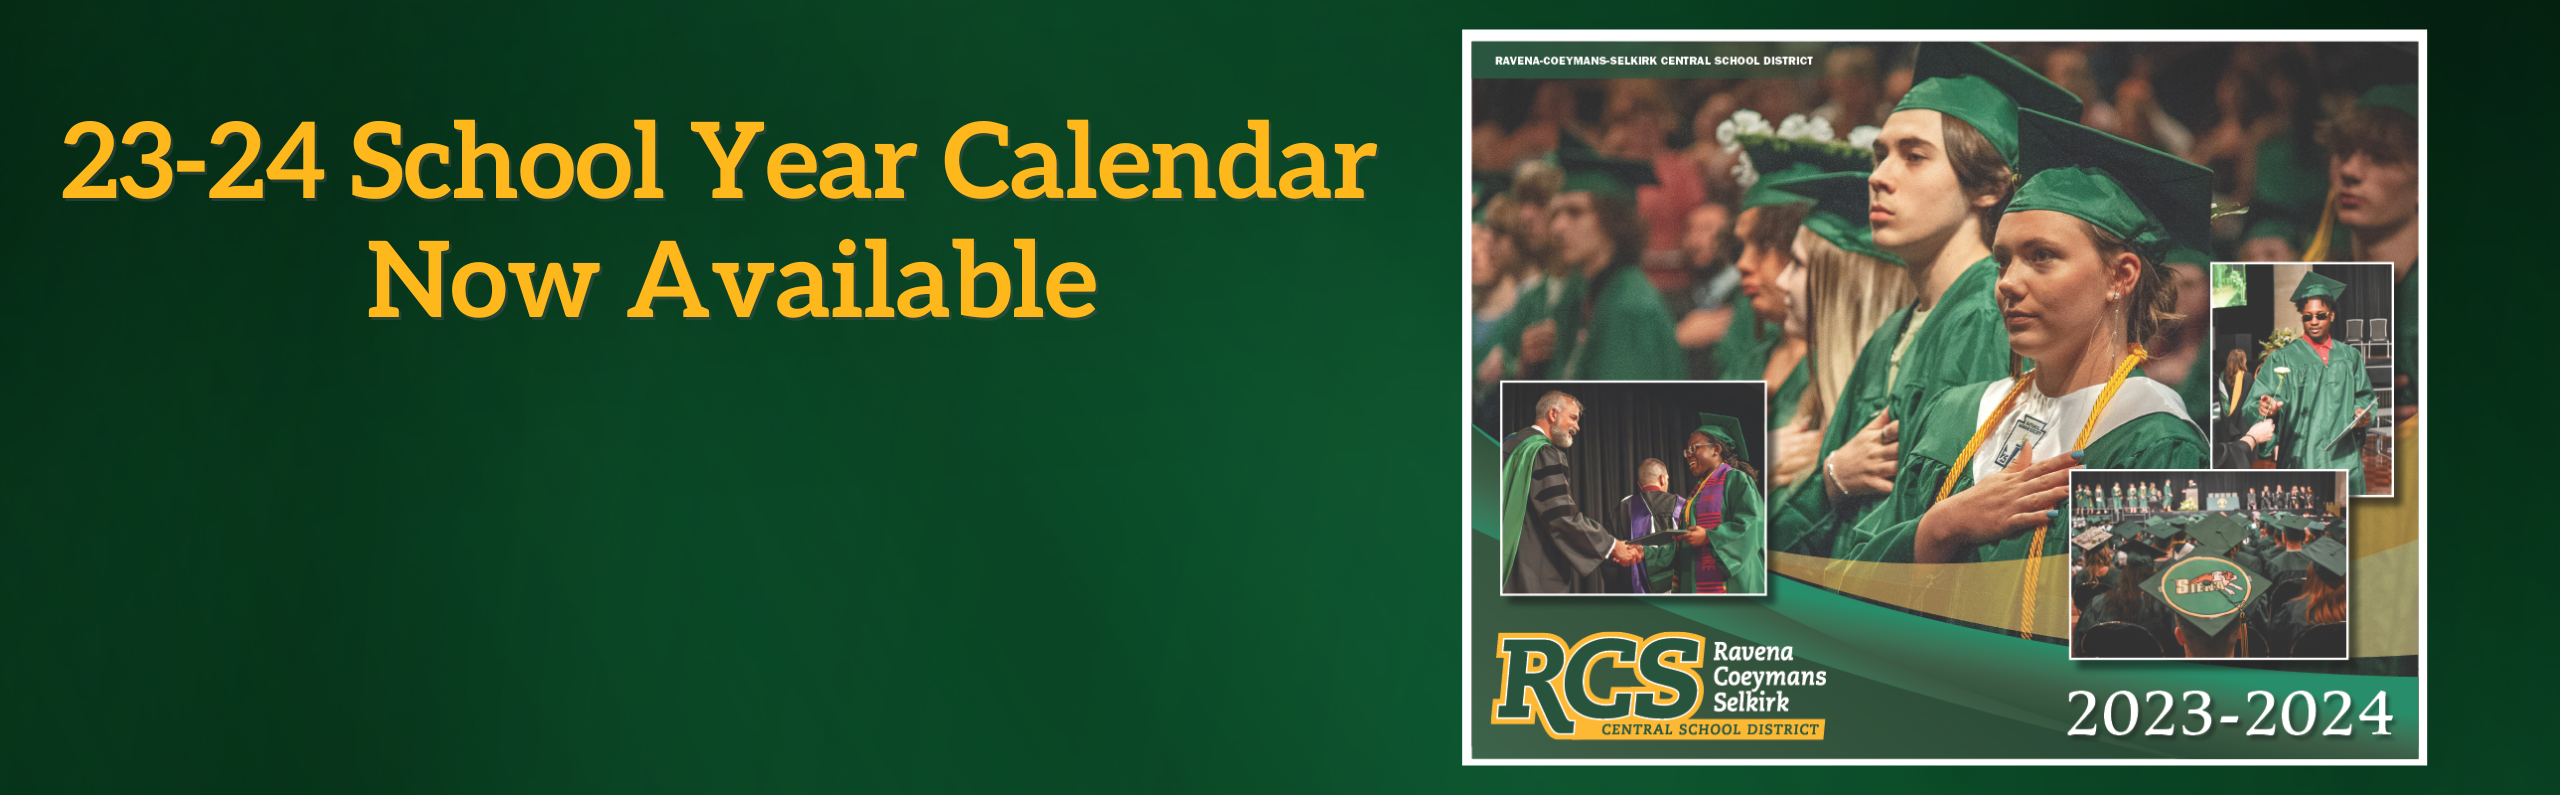 23-24 School Year Calendar Now Available